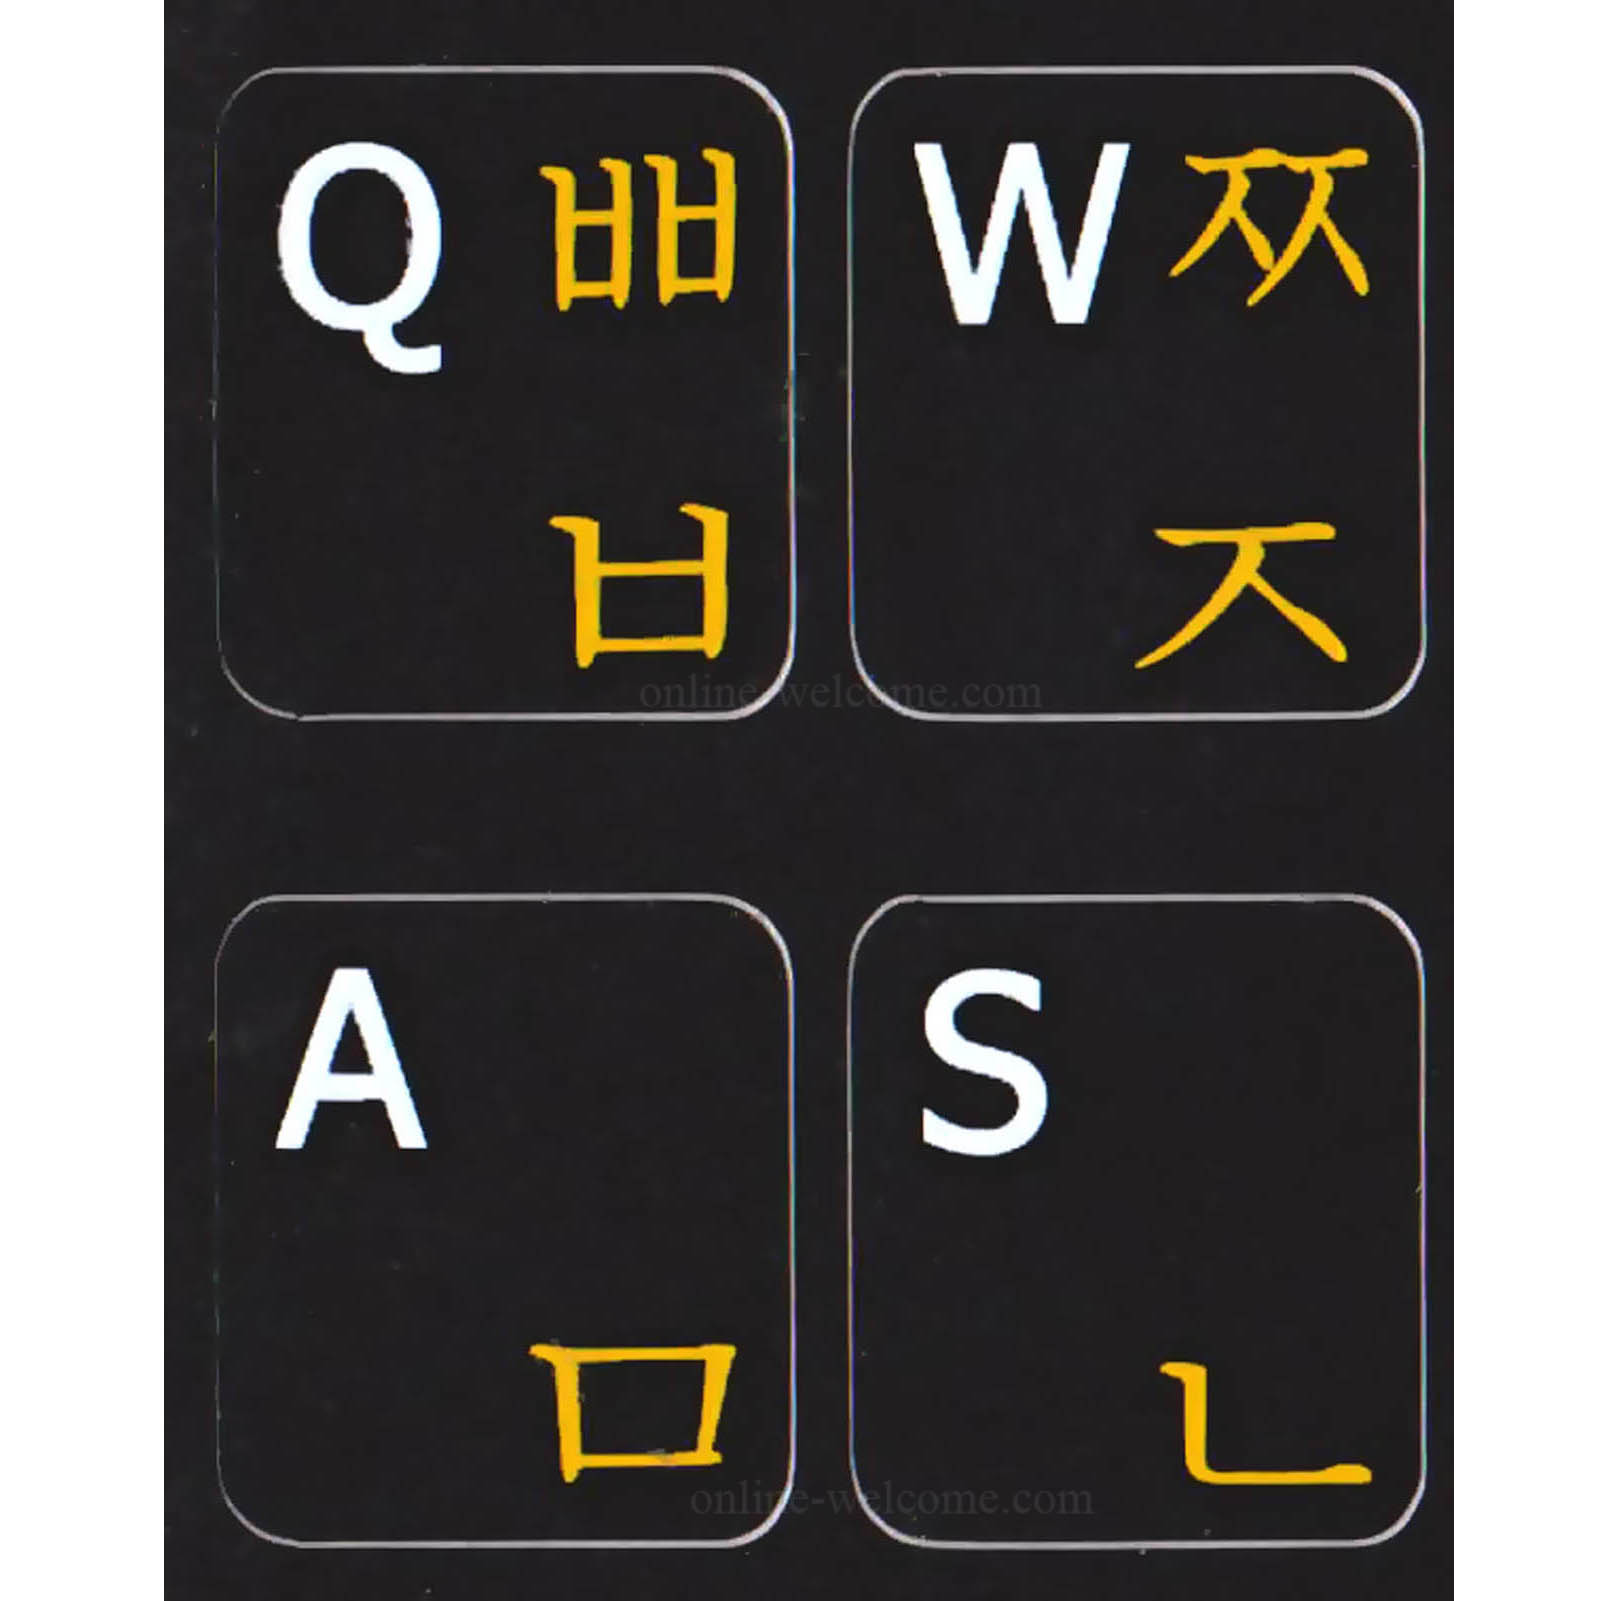 english to korean translation keyboard